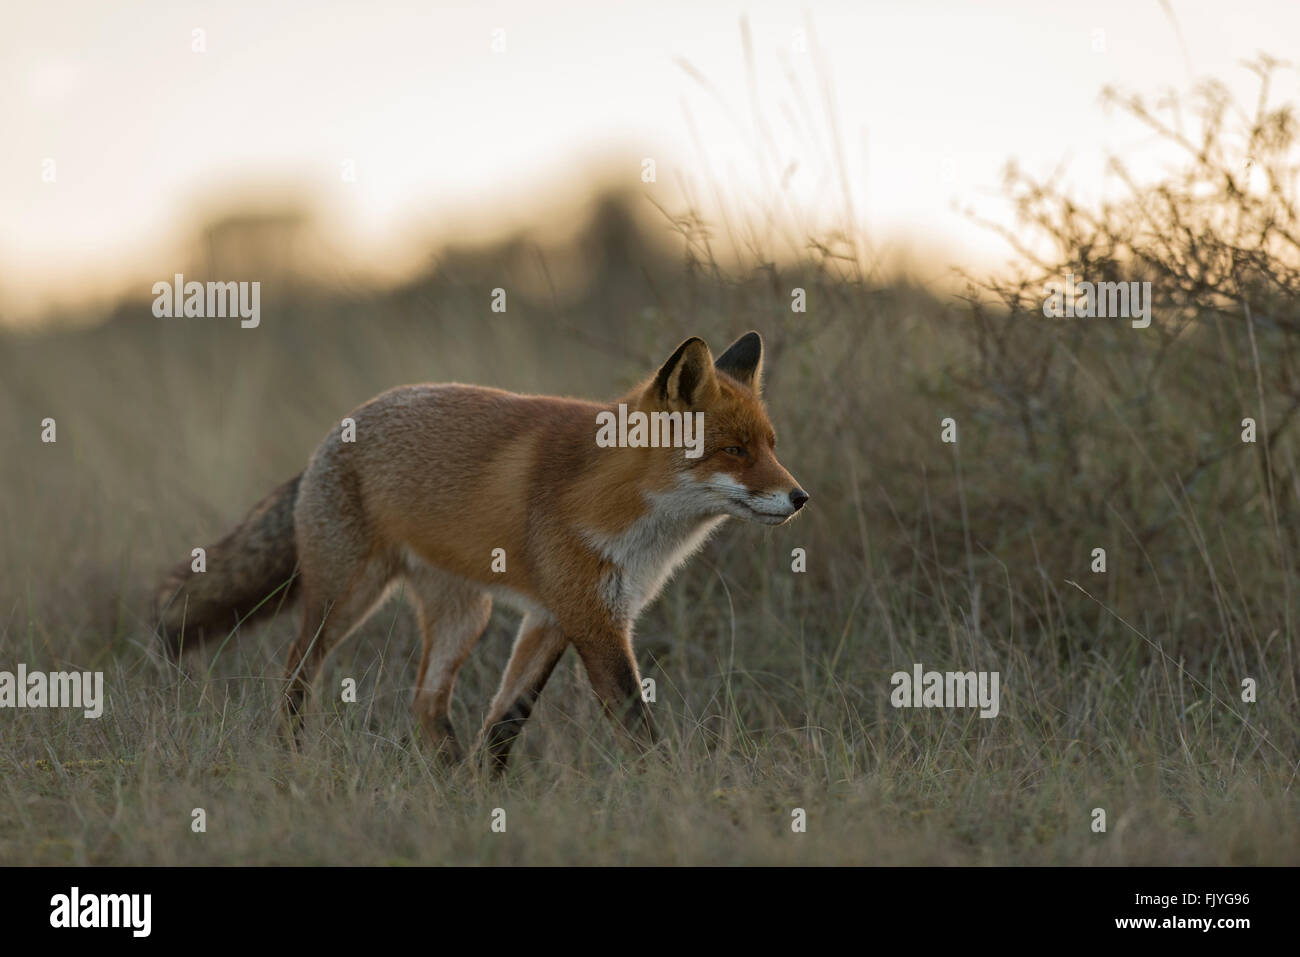 Red Fox / Rotfuchs ( Vulpes vulpes ) passeggiate attraverso l'erba alta, sembra concentrato, nel meraviglioso retroilluminazione morbido, toni caldi. Foto Stock